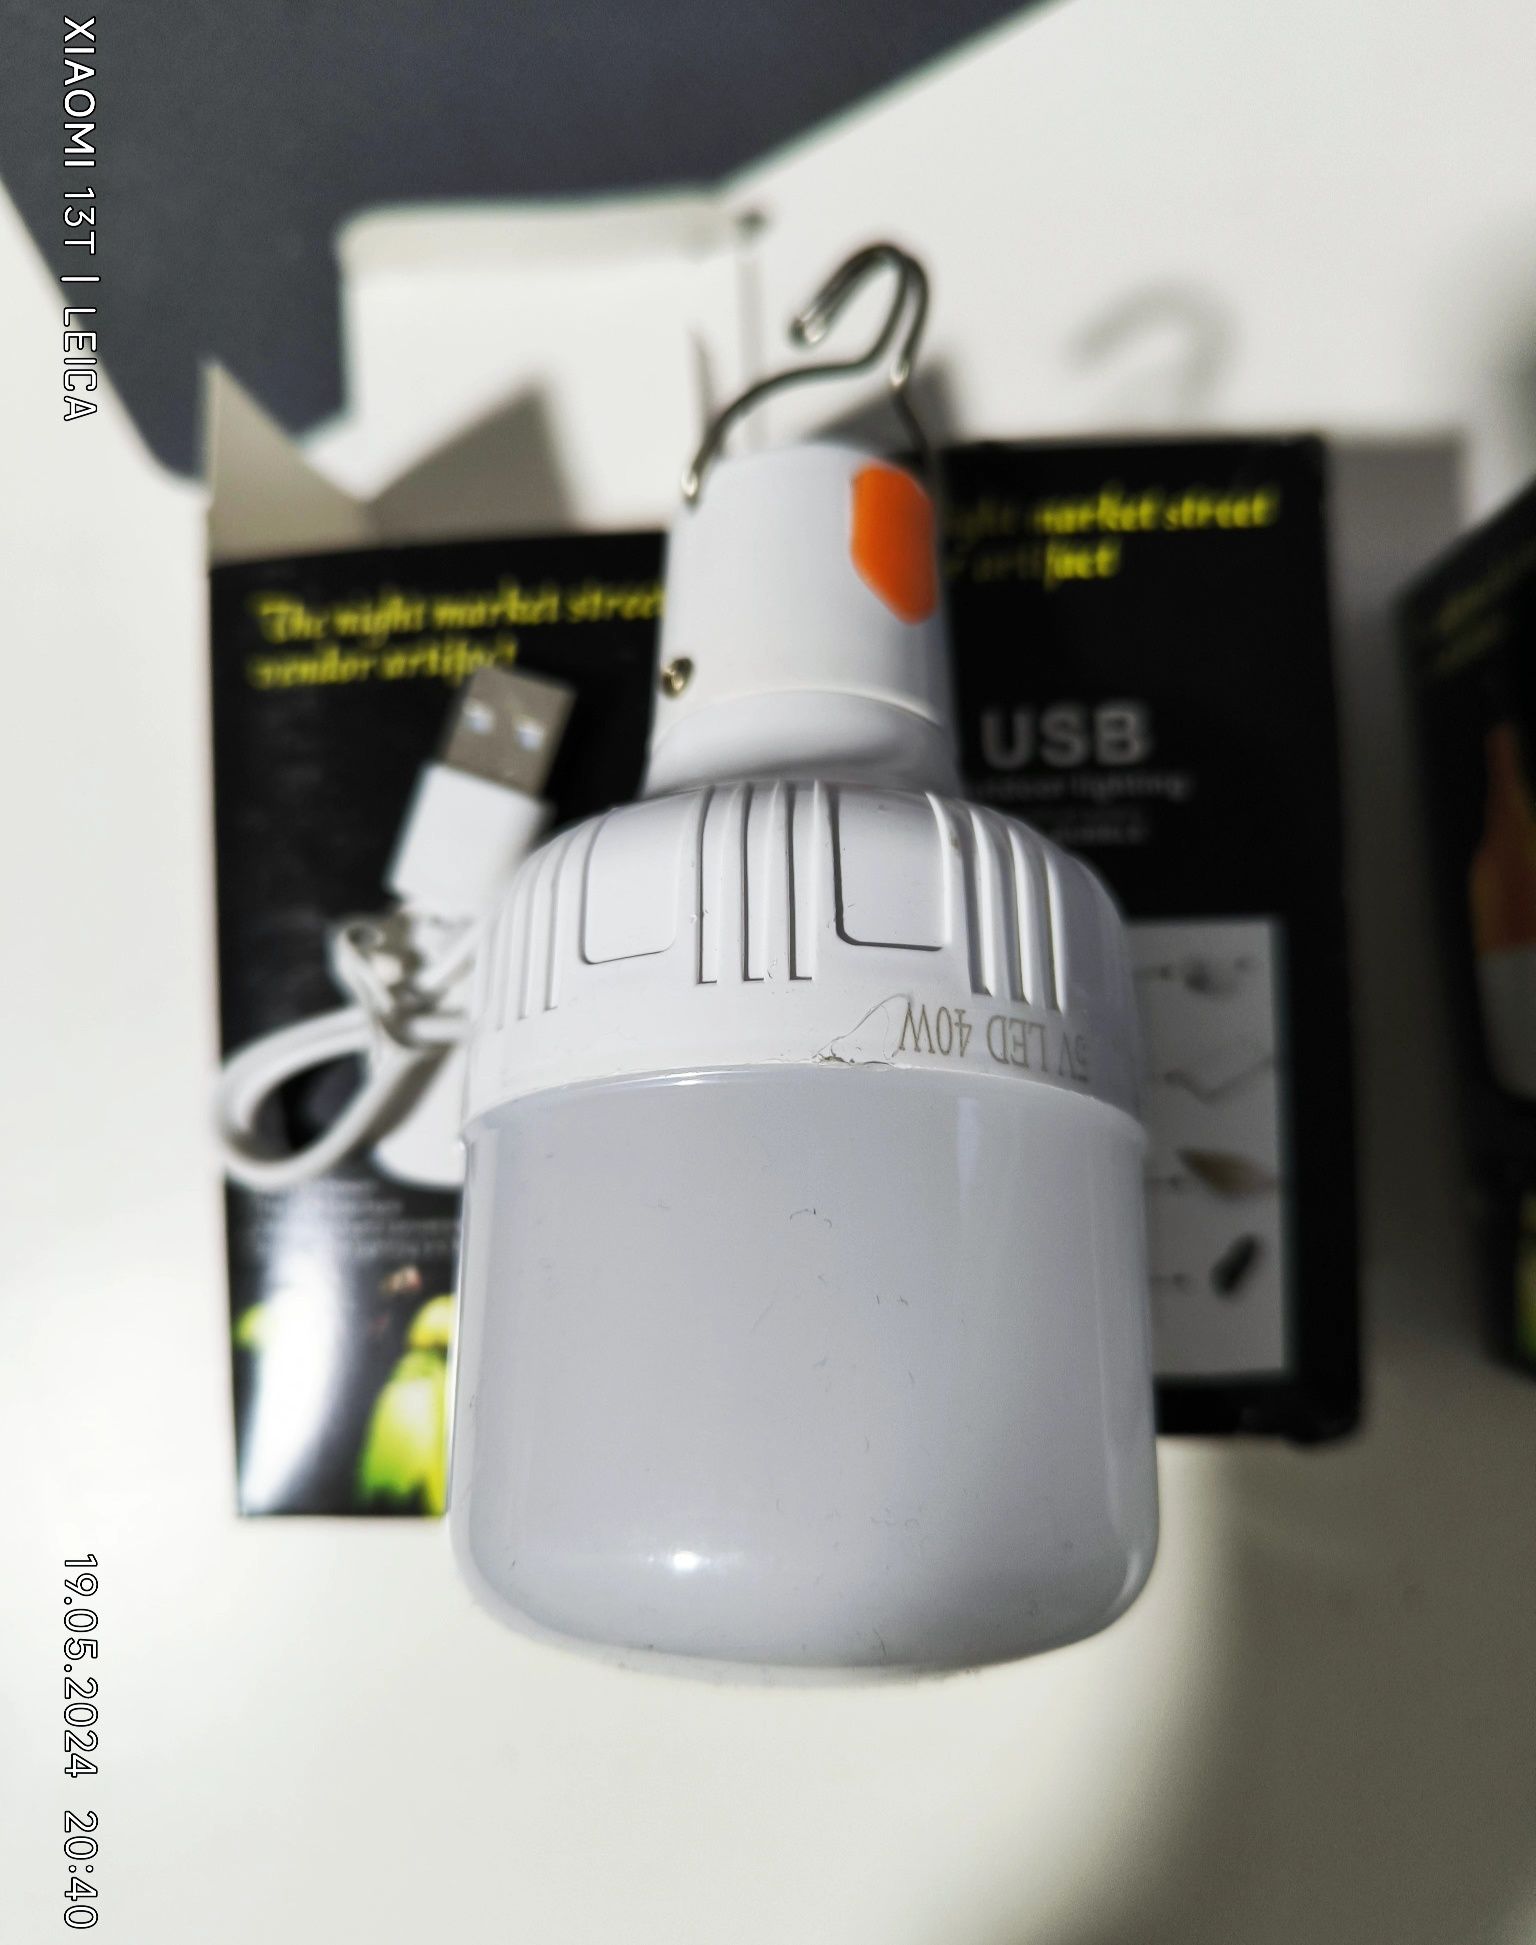 Автономна лампа. Підвісний ліхтар, автономна лампа USB